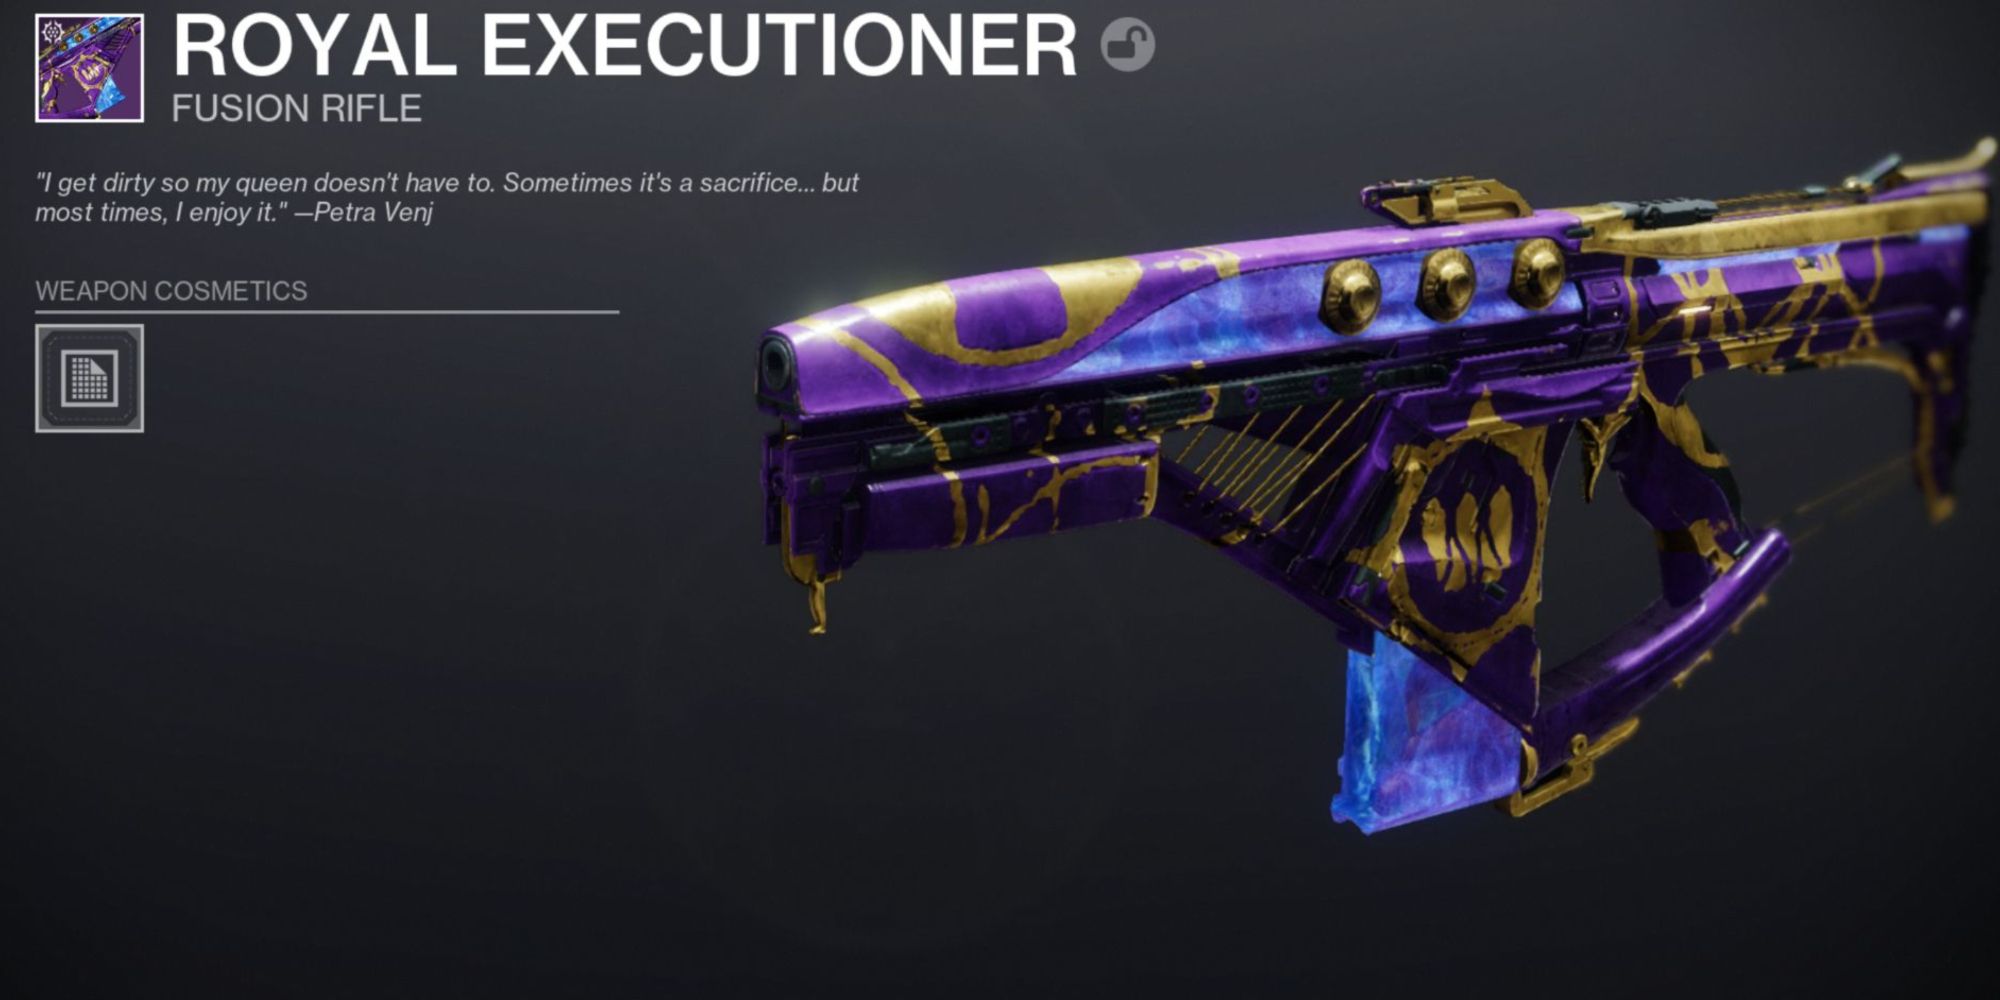 Destiny 2: a purple and gold coated futuristic rifle